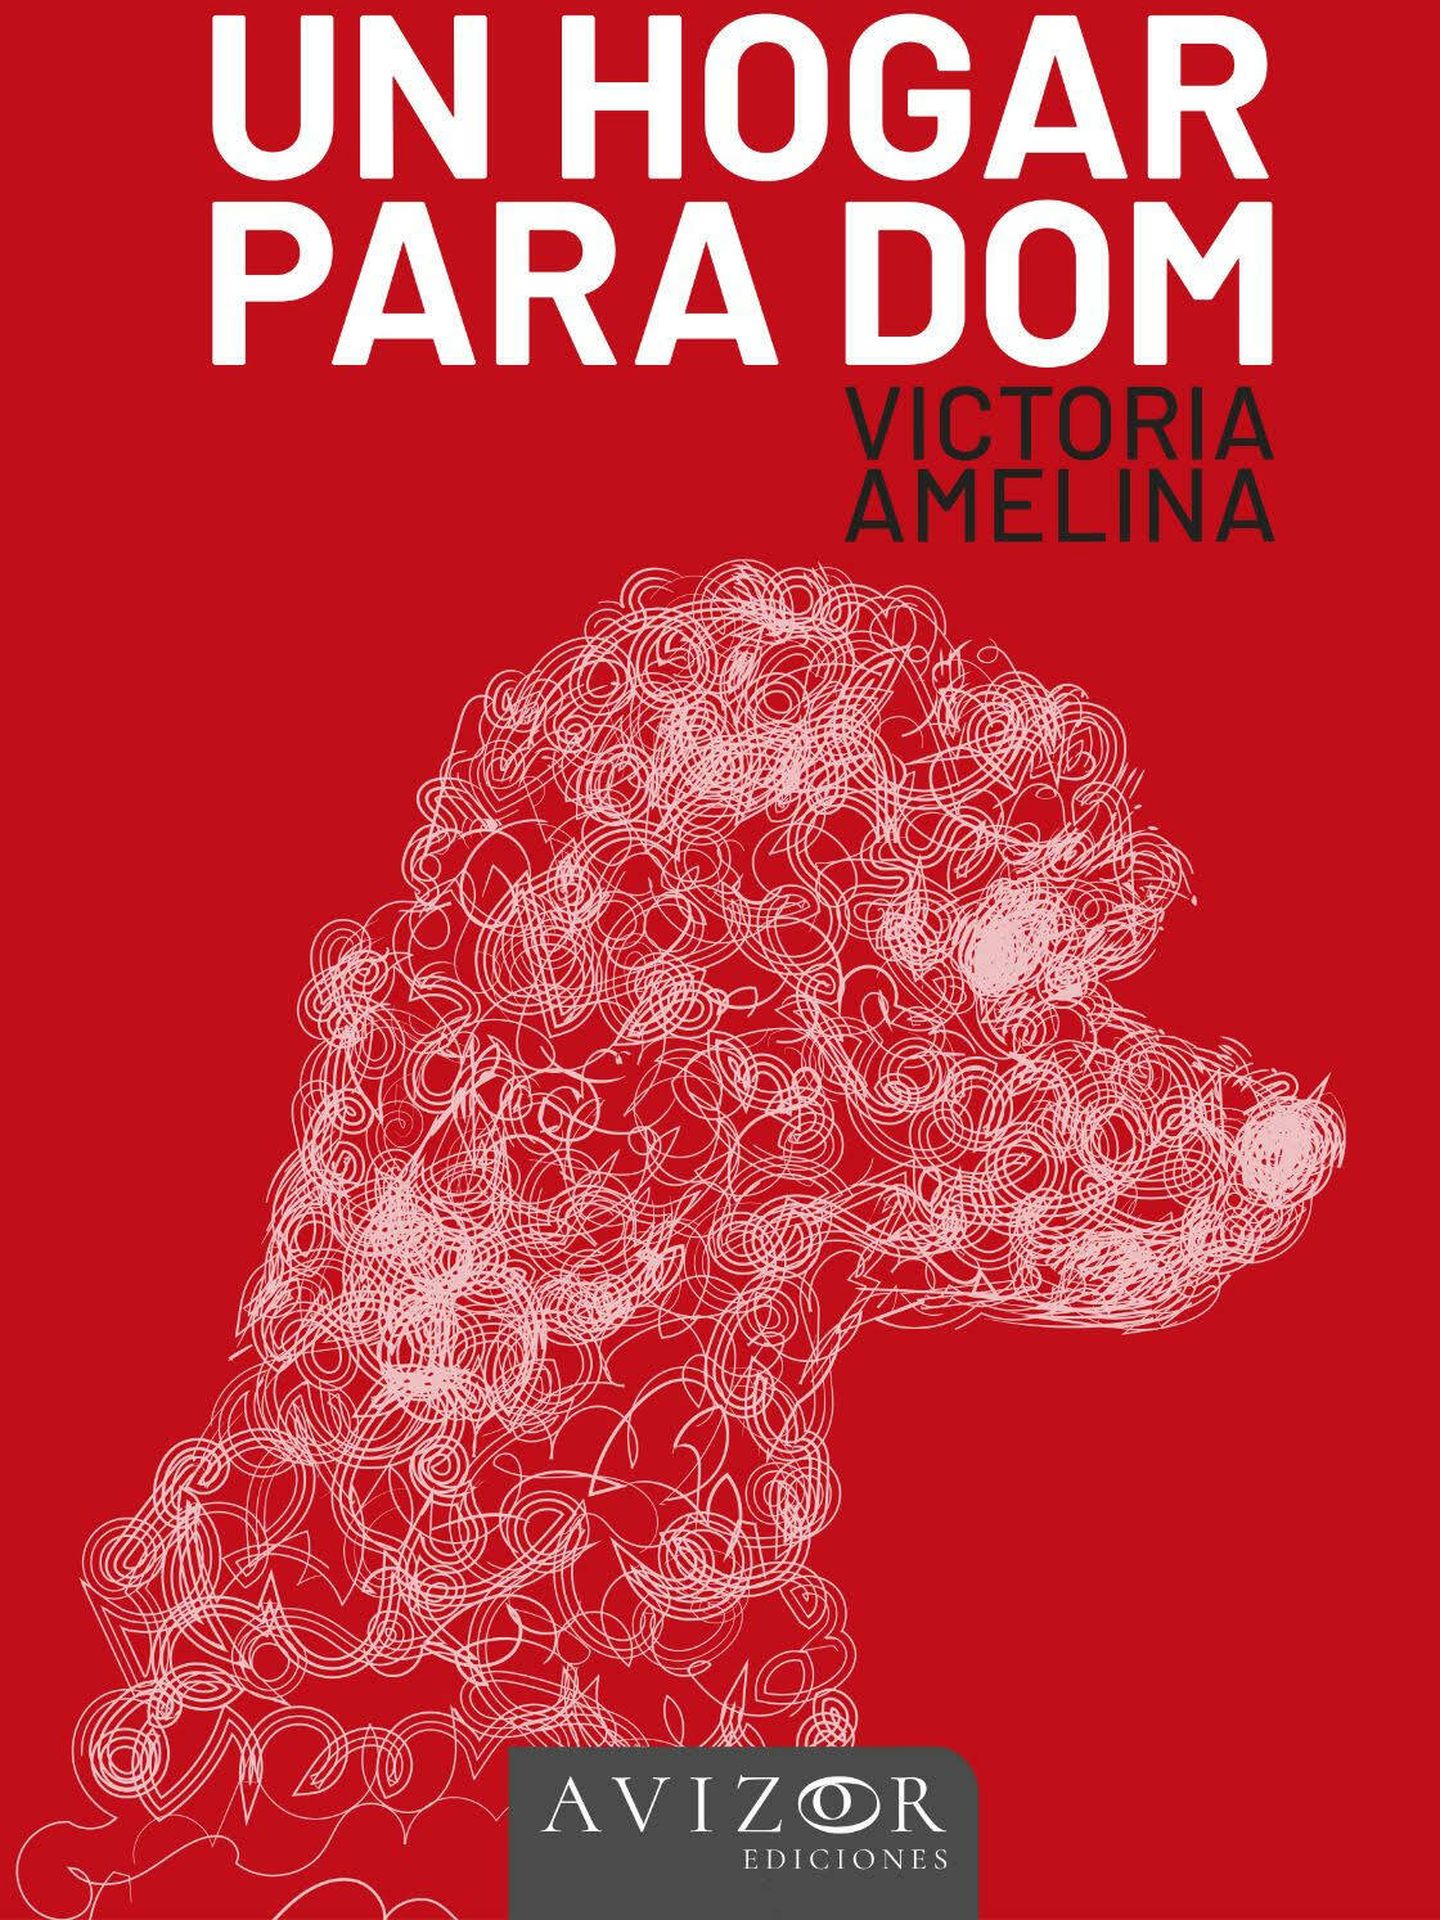 Portada de 'Un hogar para Dom', el libro de la escritora ucraniana Victoria Amelina recién publicado en España por la editorial Avizor.